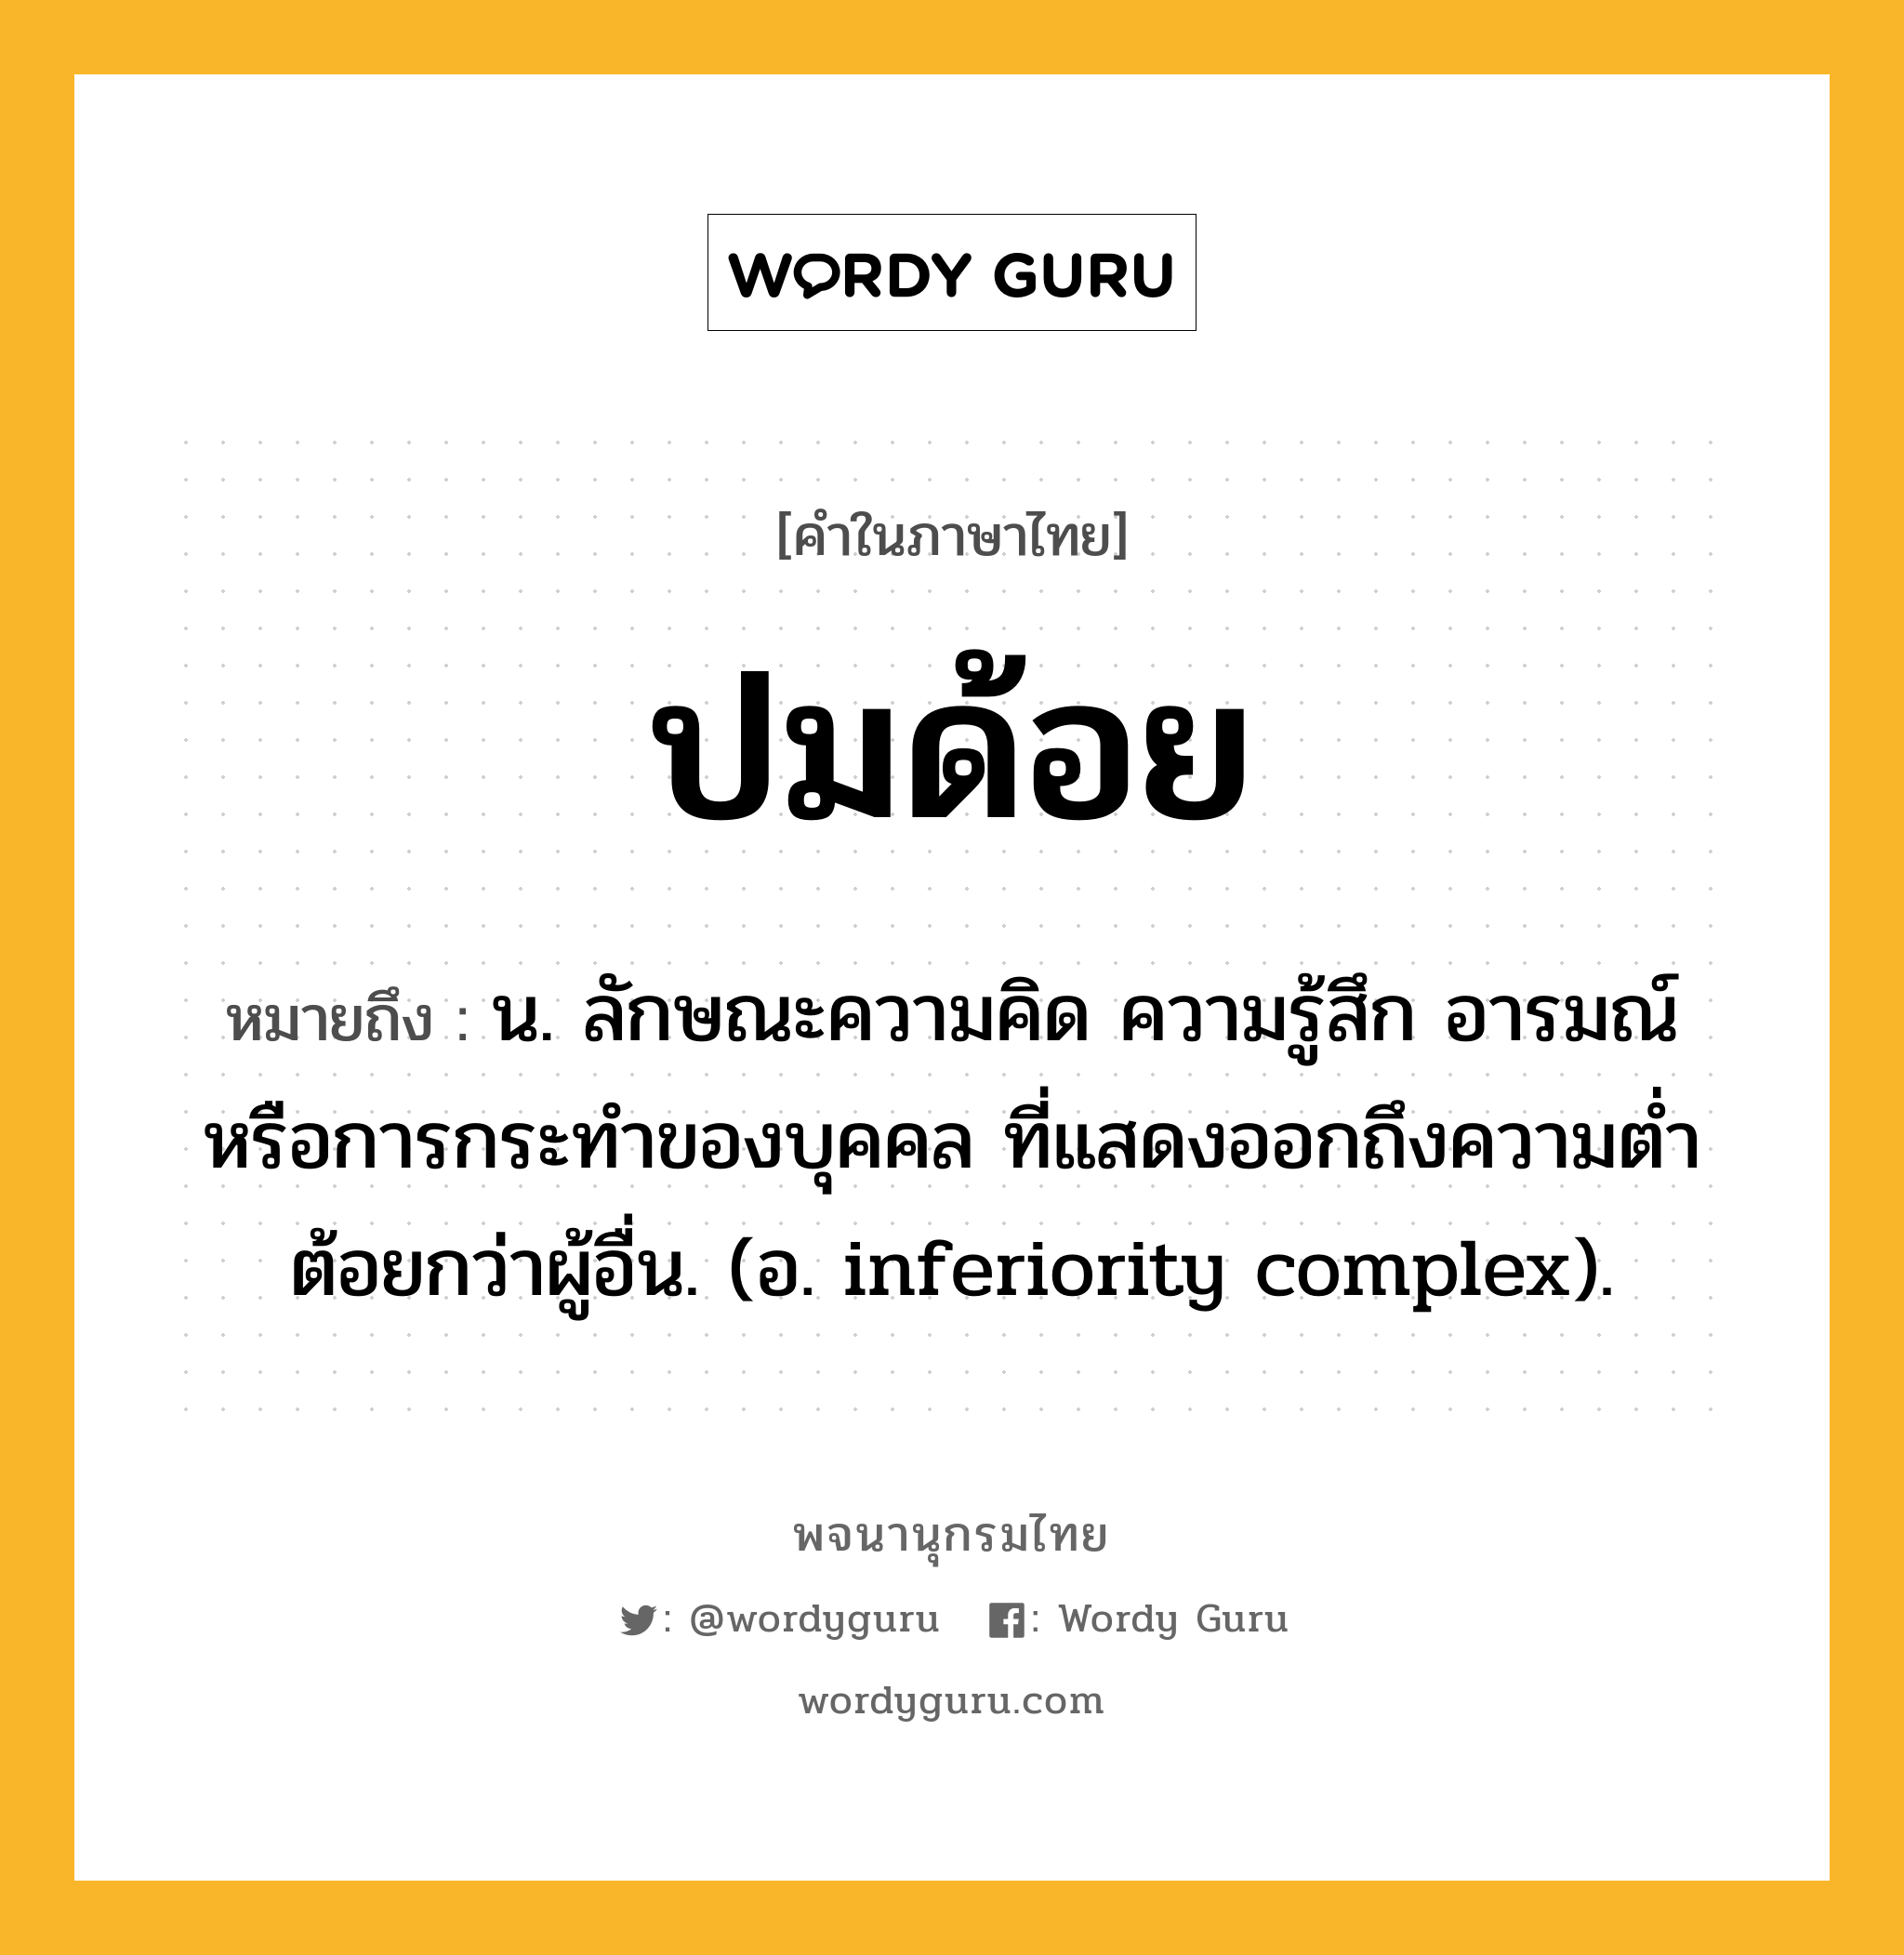 ปมด้อย หมายถึงอะไร?, คำในภาษาไทย ปมด้อย หมายถึง น. ลักษณะความคิด ความรู้สึก อารมณ์ หรือการกระทําของบุคคล ที่แสดงออกถึงความตํ่าต้อยกว่าผู้อื่น. (อ. inferiority complex).